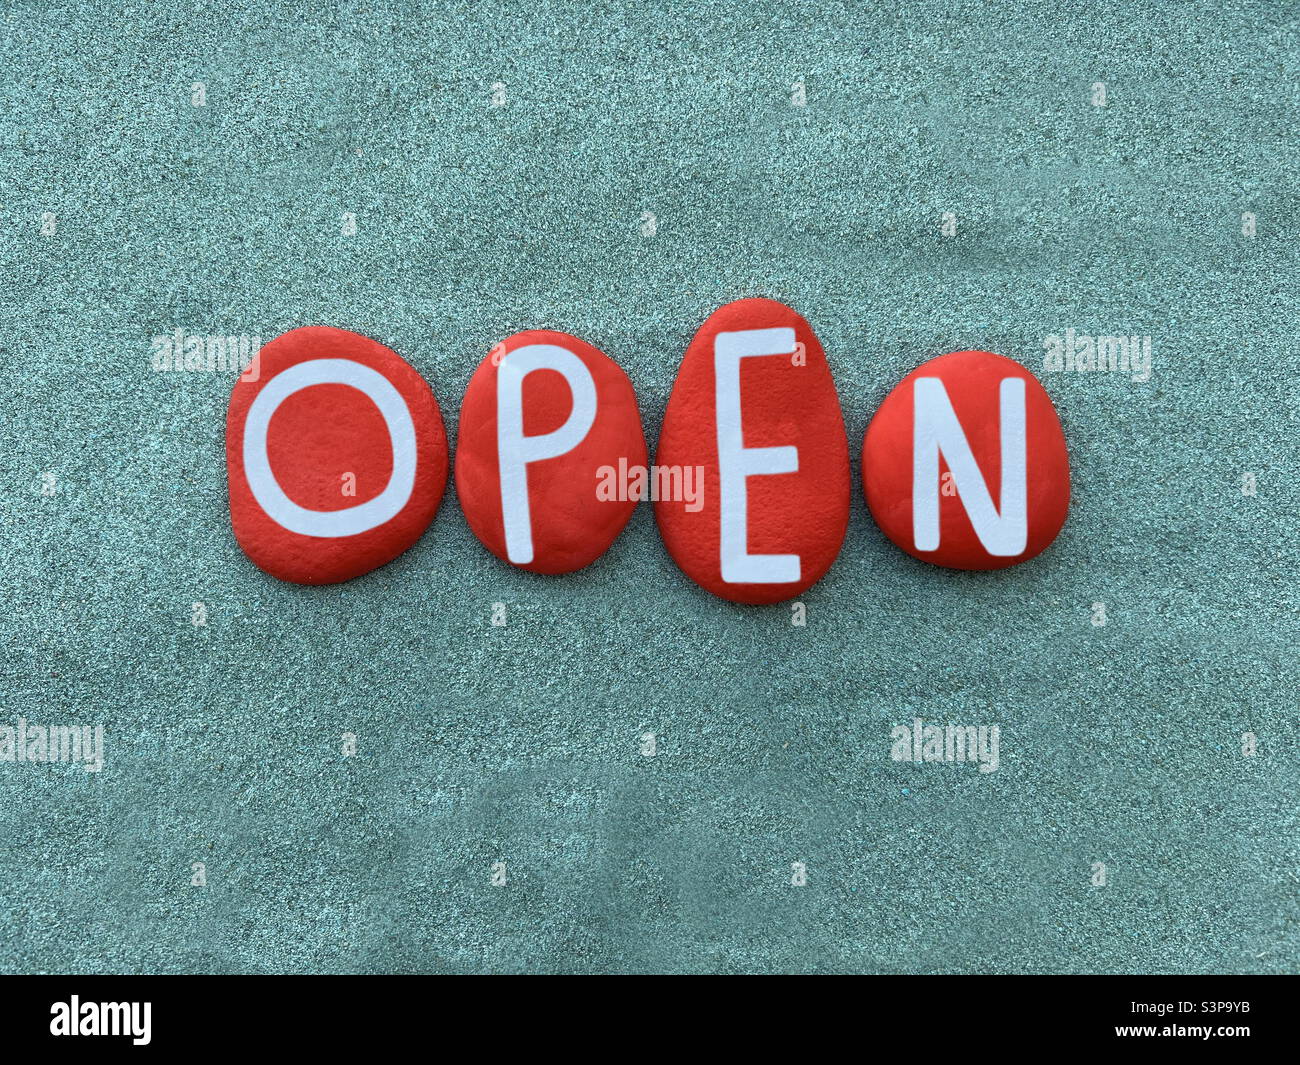 Palabra abierta compuesta por letras de piedra de color rojo sobre arena verde Foto de stock